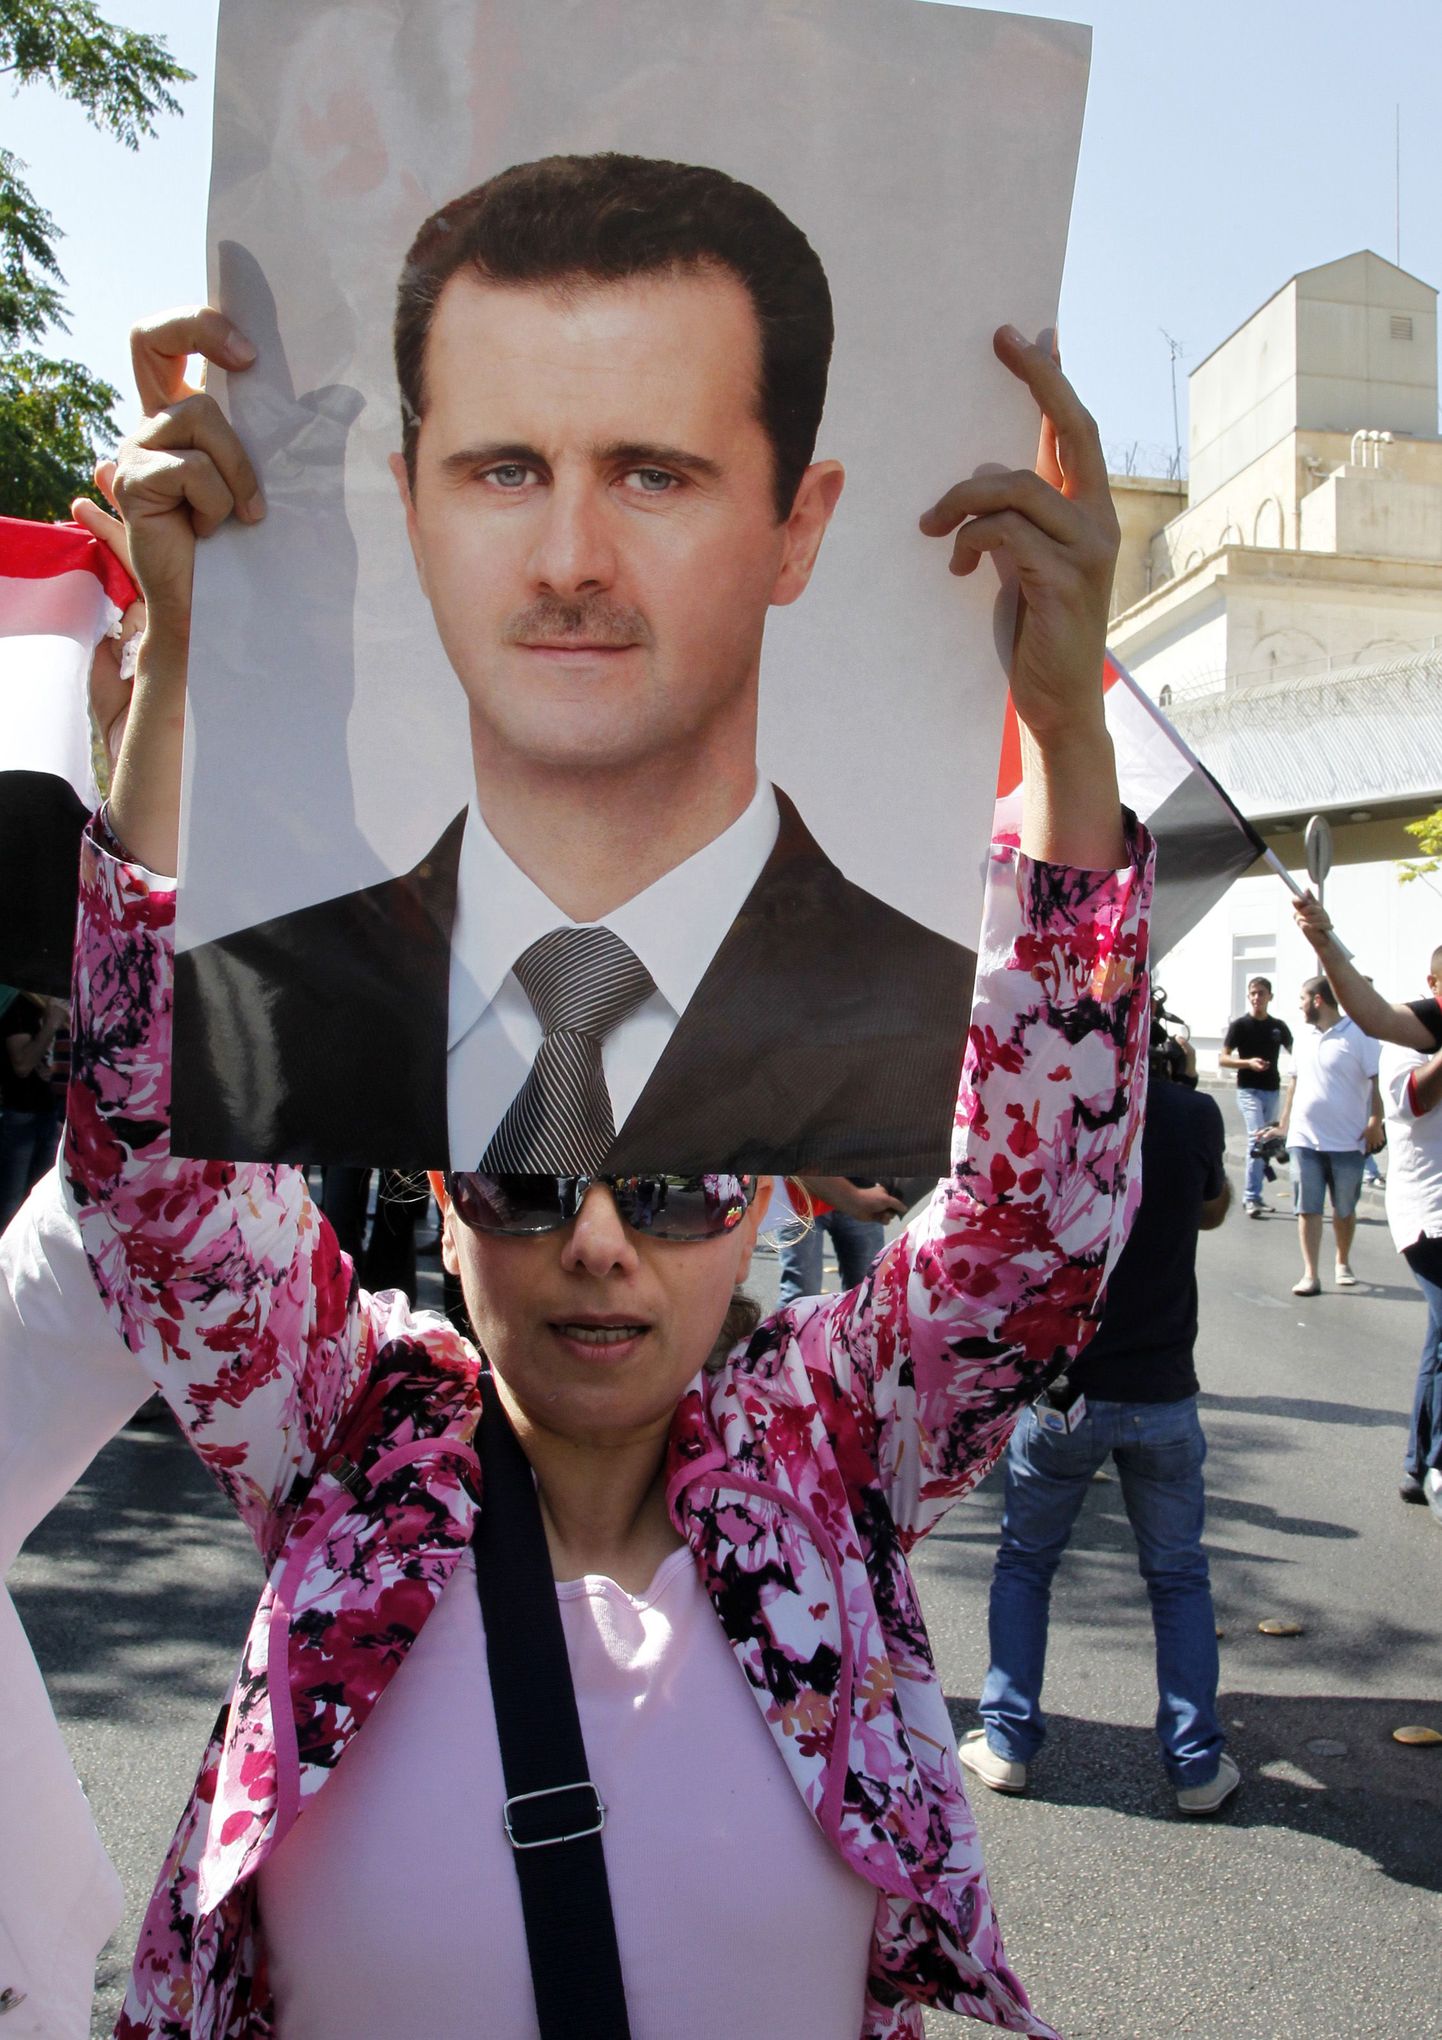 Süüria presidendi Bashar al-Assadi toetaja riigipea pildiga.